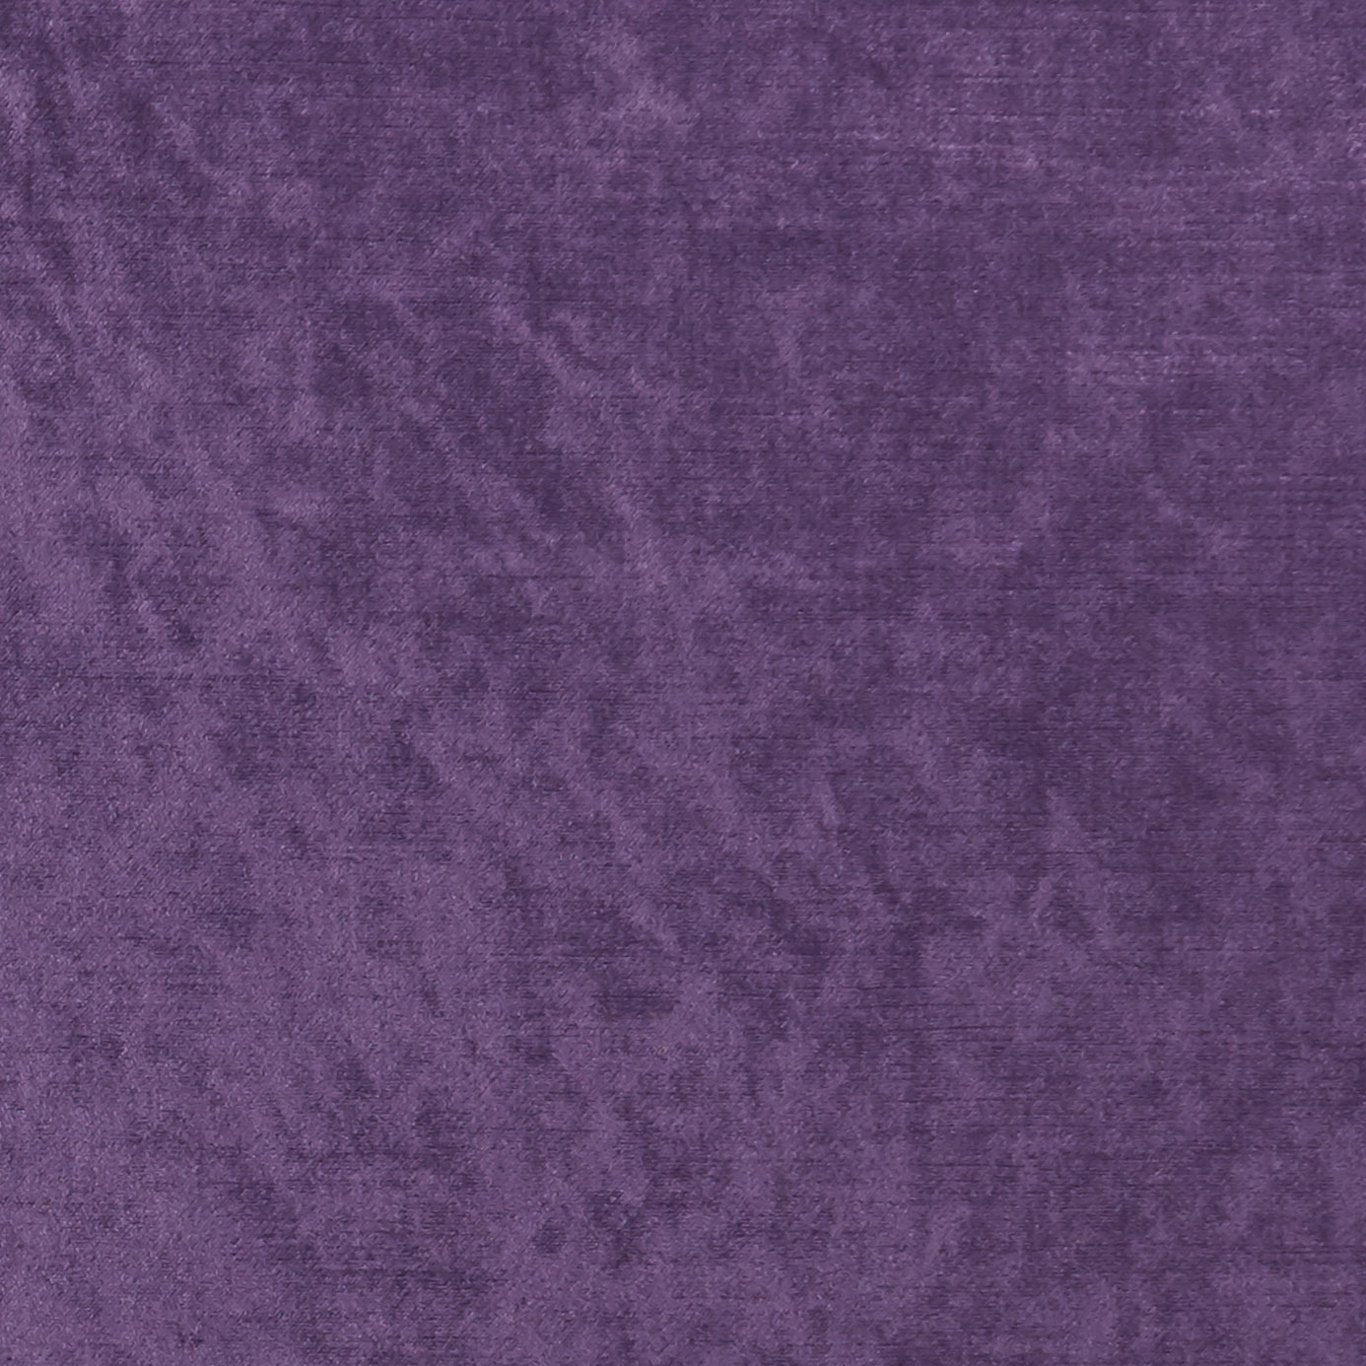 Allure Fabric by Clarke & Clarke - F1069/18 - Grape